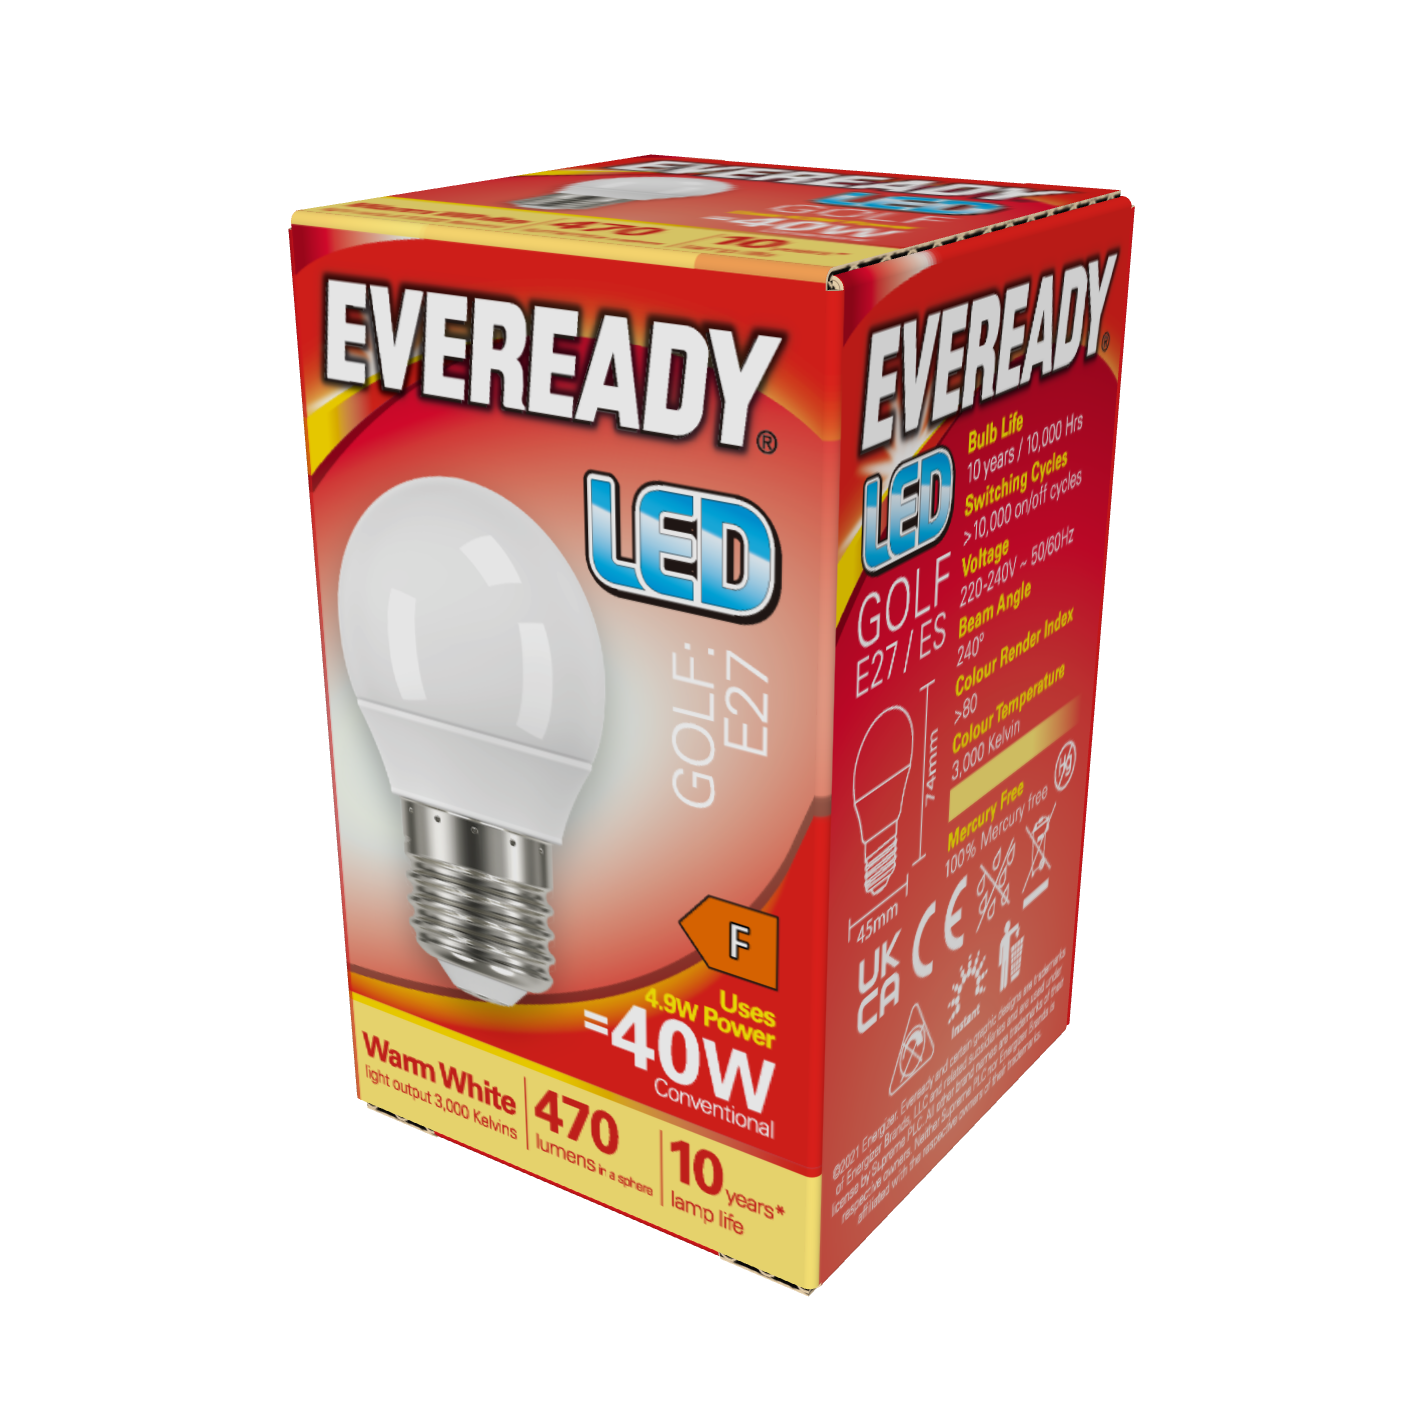 Eveready LED Golf E27 (ES) 470lm 4,9W 3.000K (Blanco Cálido), Caja de 1